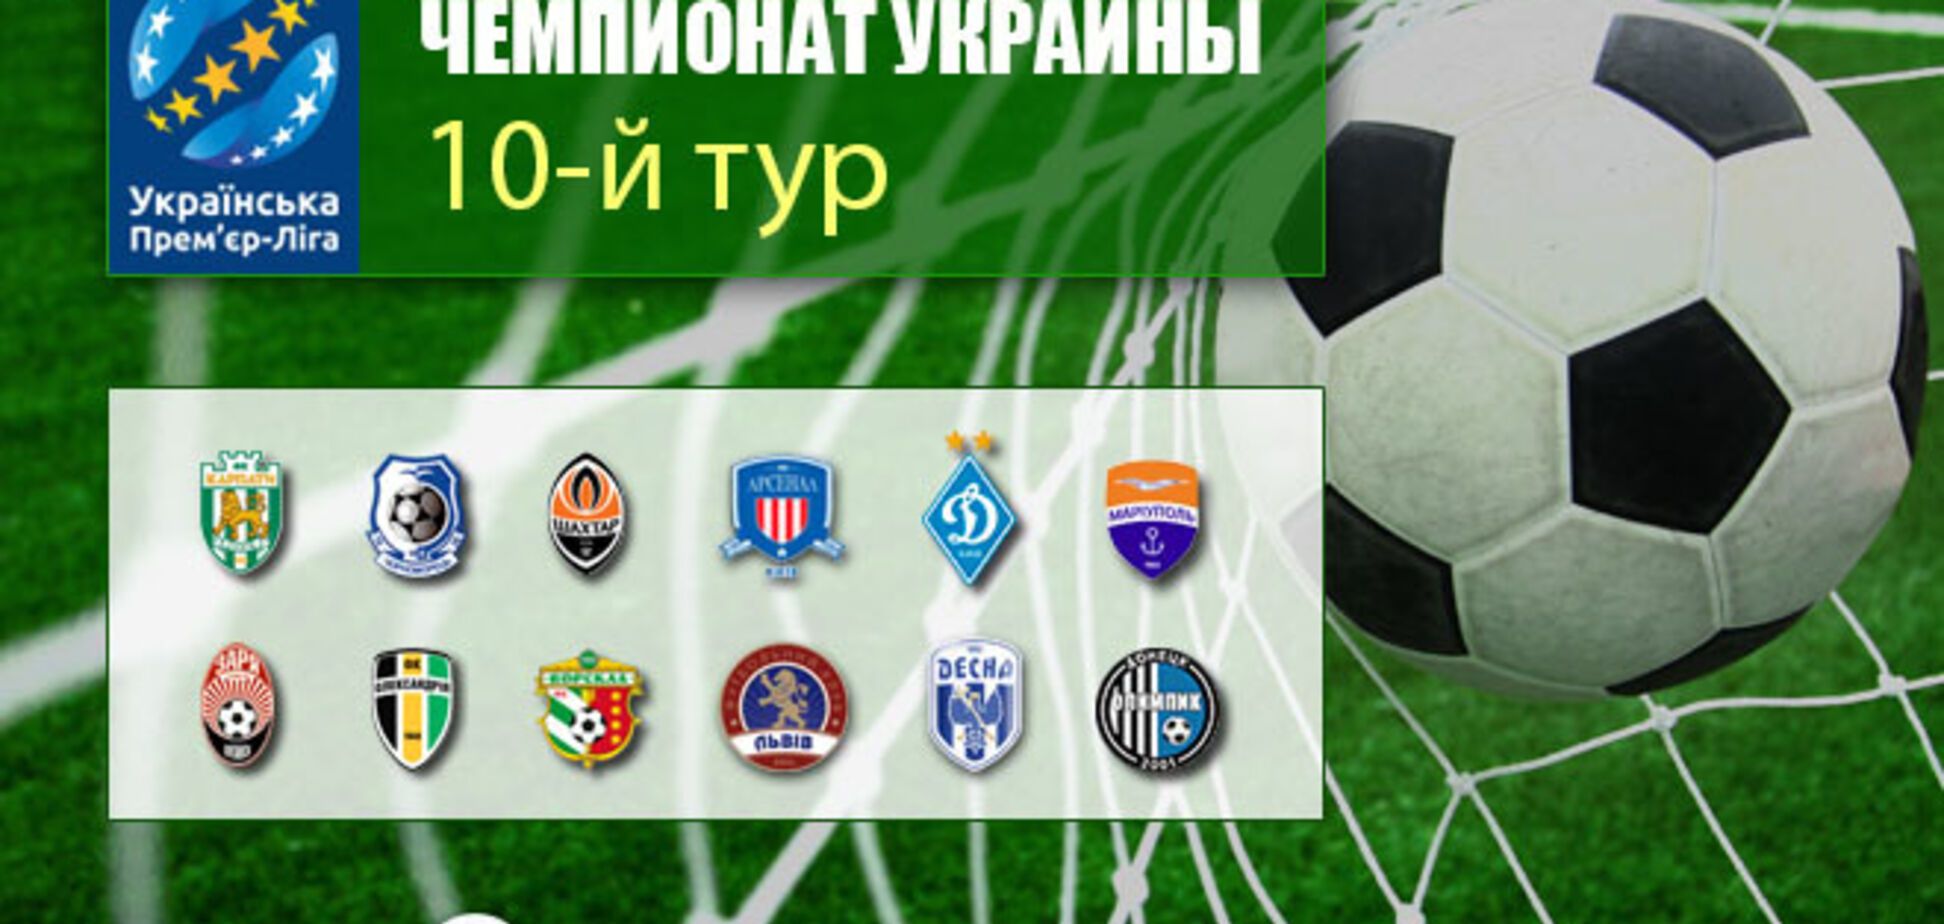 10-й тур чемпионата Украины по футболу: результаты и обзоры